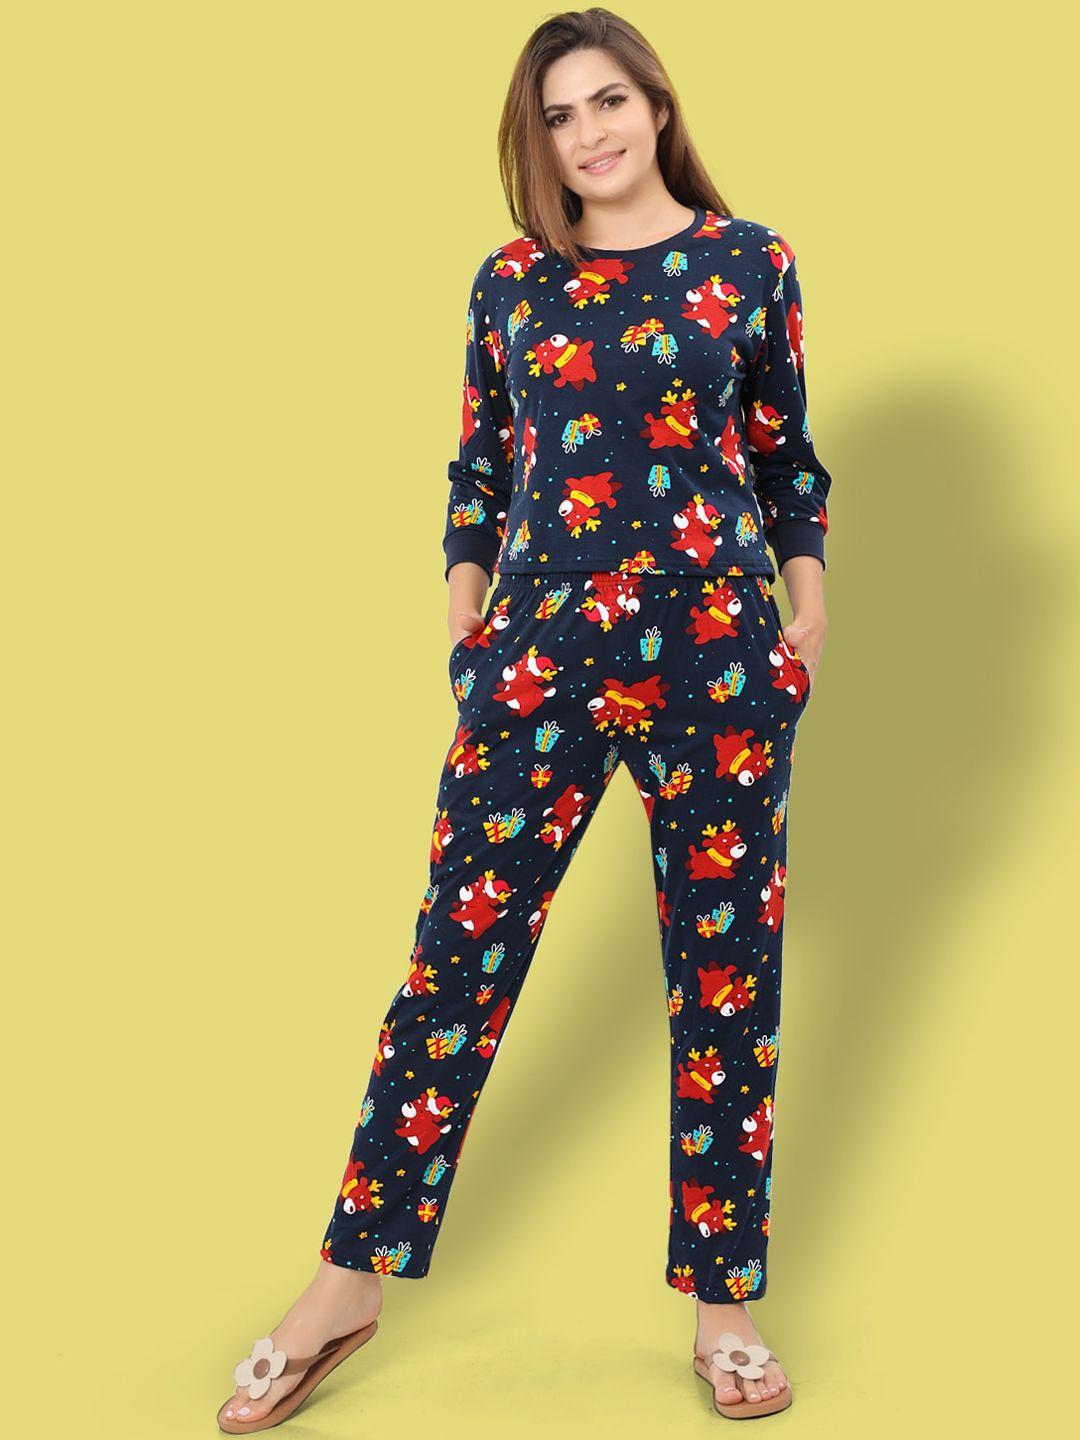 ninos-dreams-printed-cotton-t-shirt-with-pyjamas-night-suit